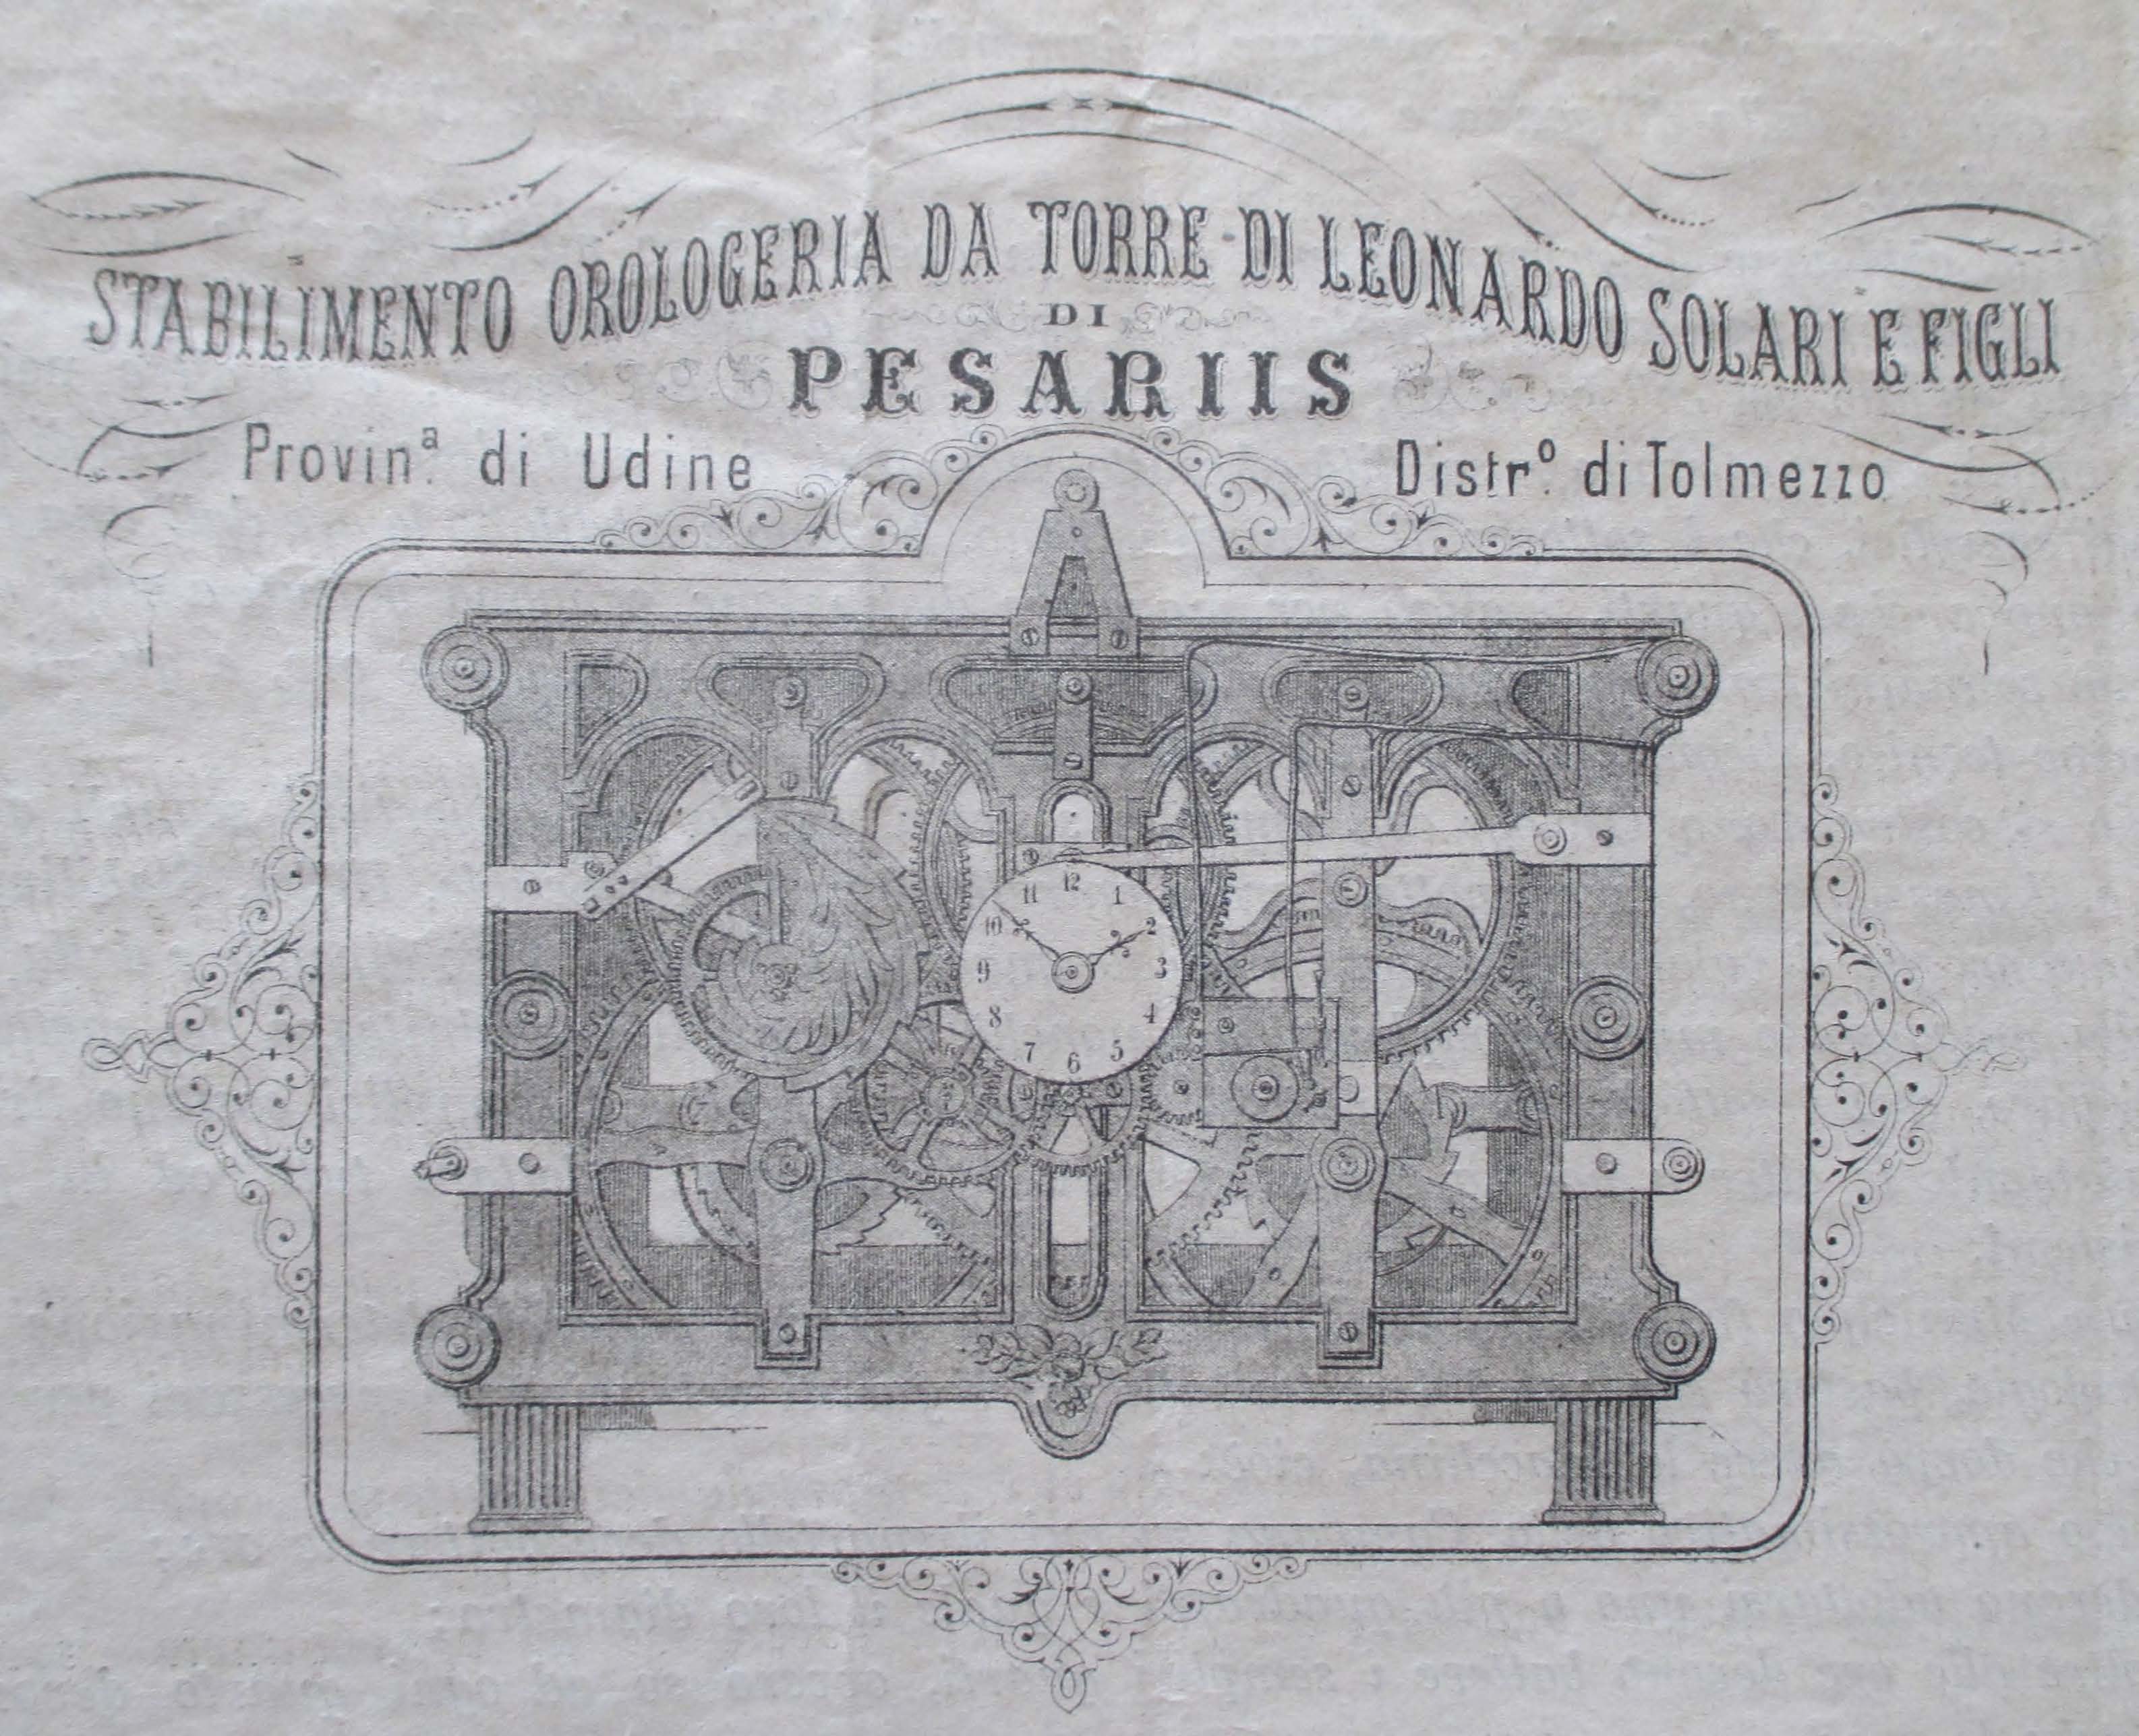 Figura 5. Frontespizio della “circolare” pubblicitaria del 1° luglio 1880